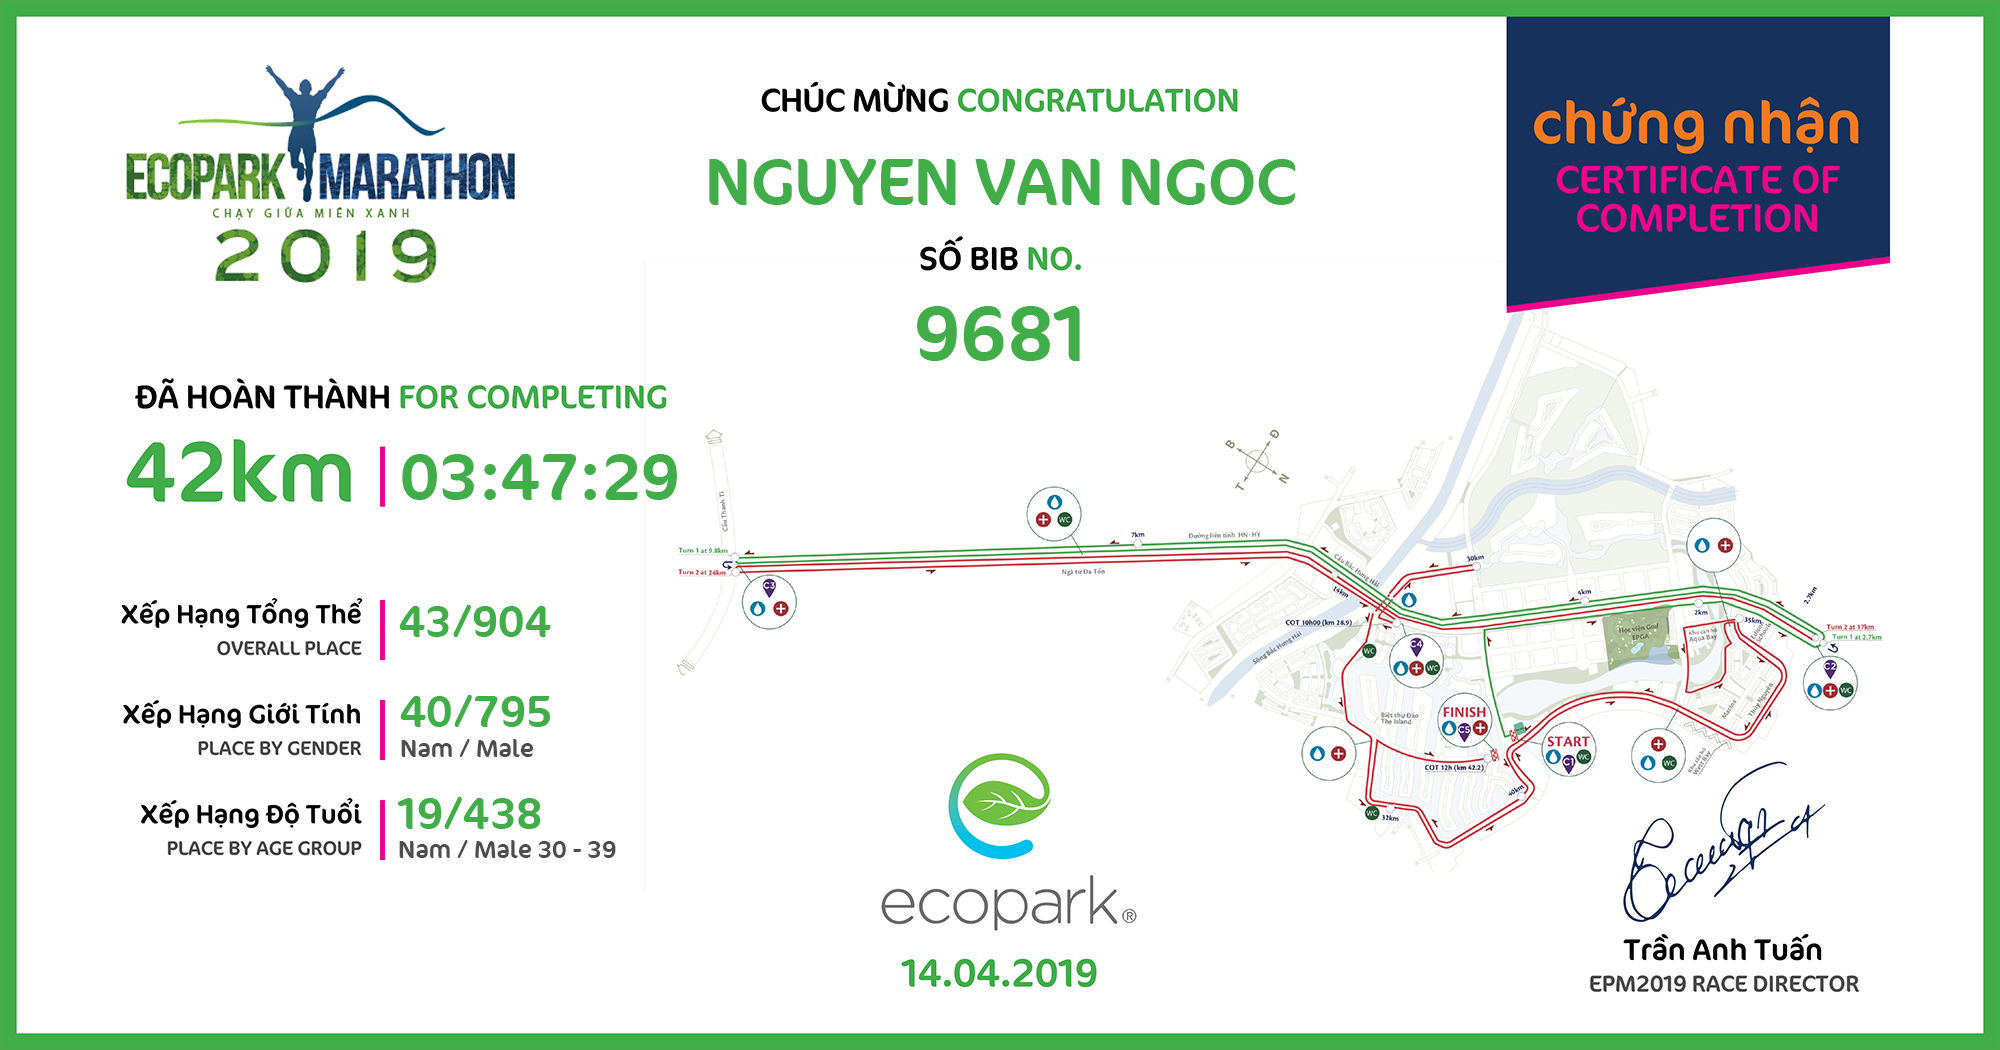 9681 - Nguyen Van Ngoc